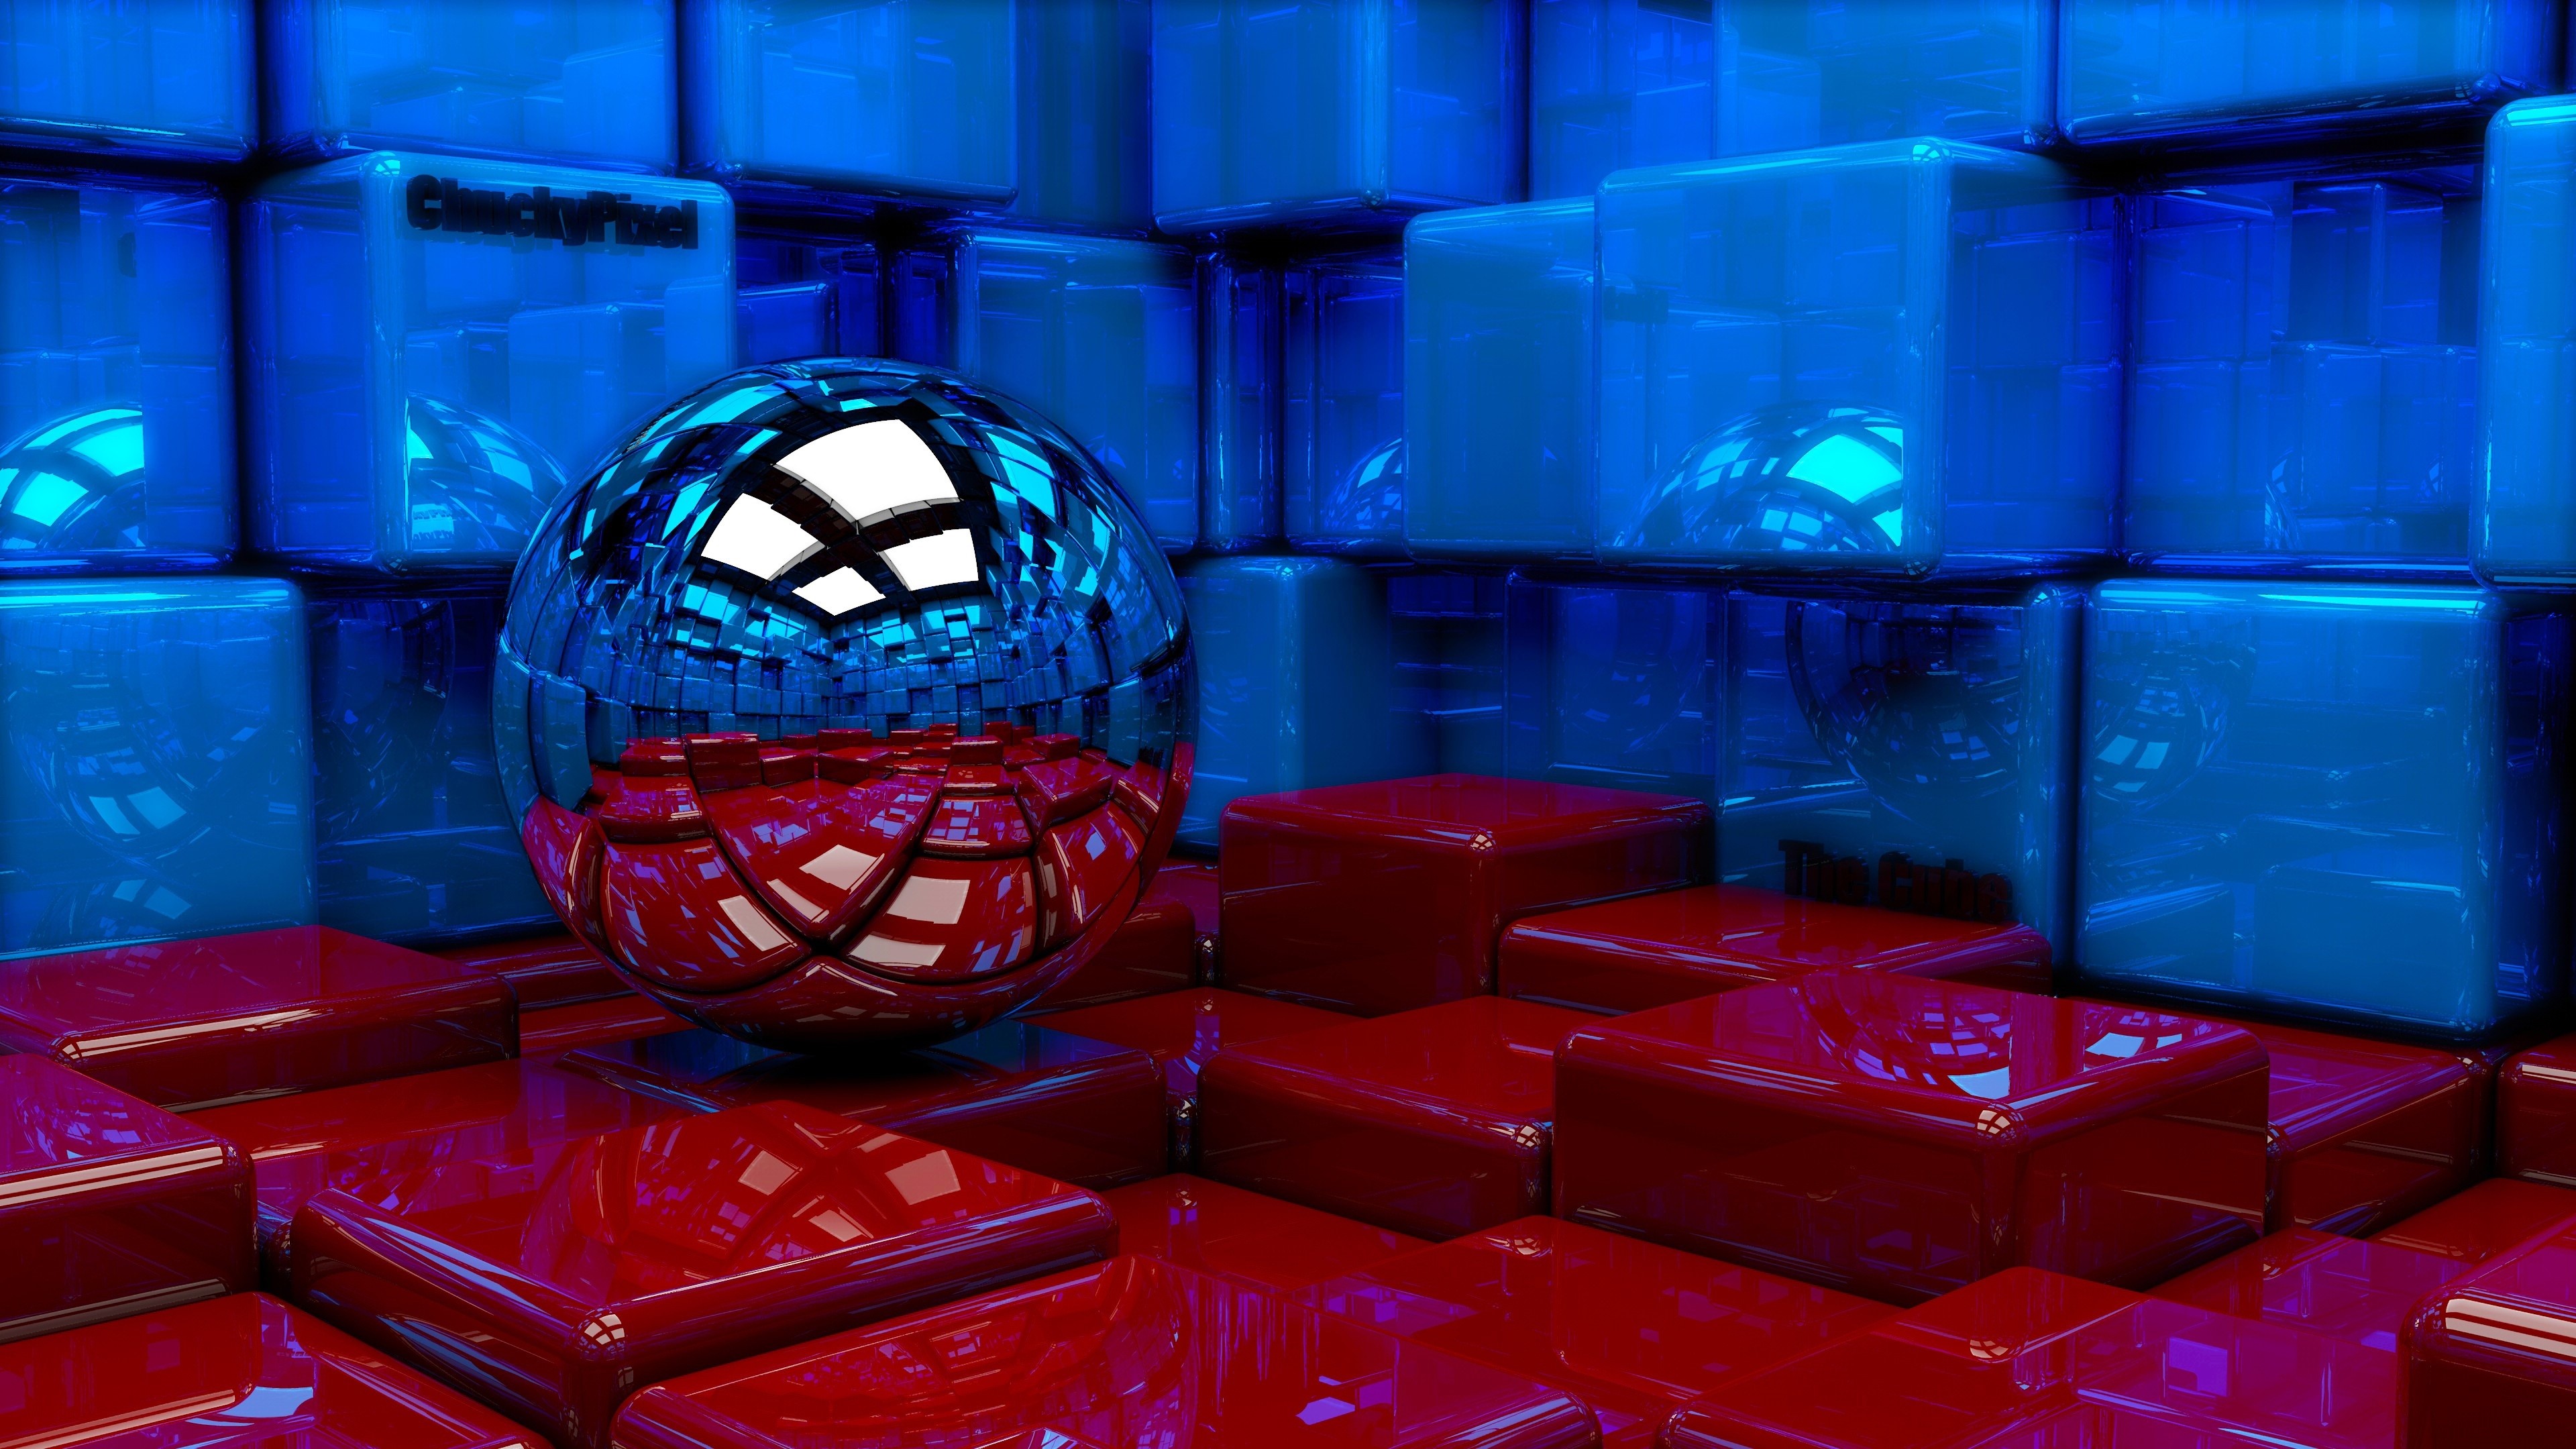 Wallpaper 3D design, blue and red cubes, ball 3840x2160 UHD 4K